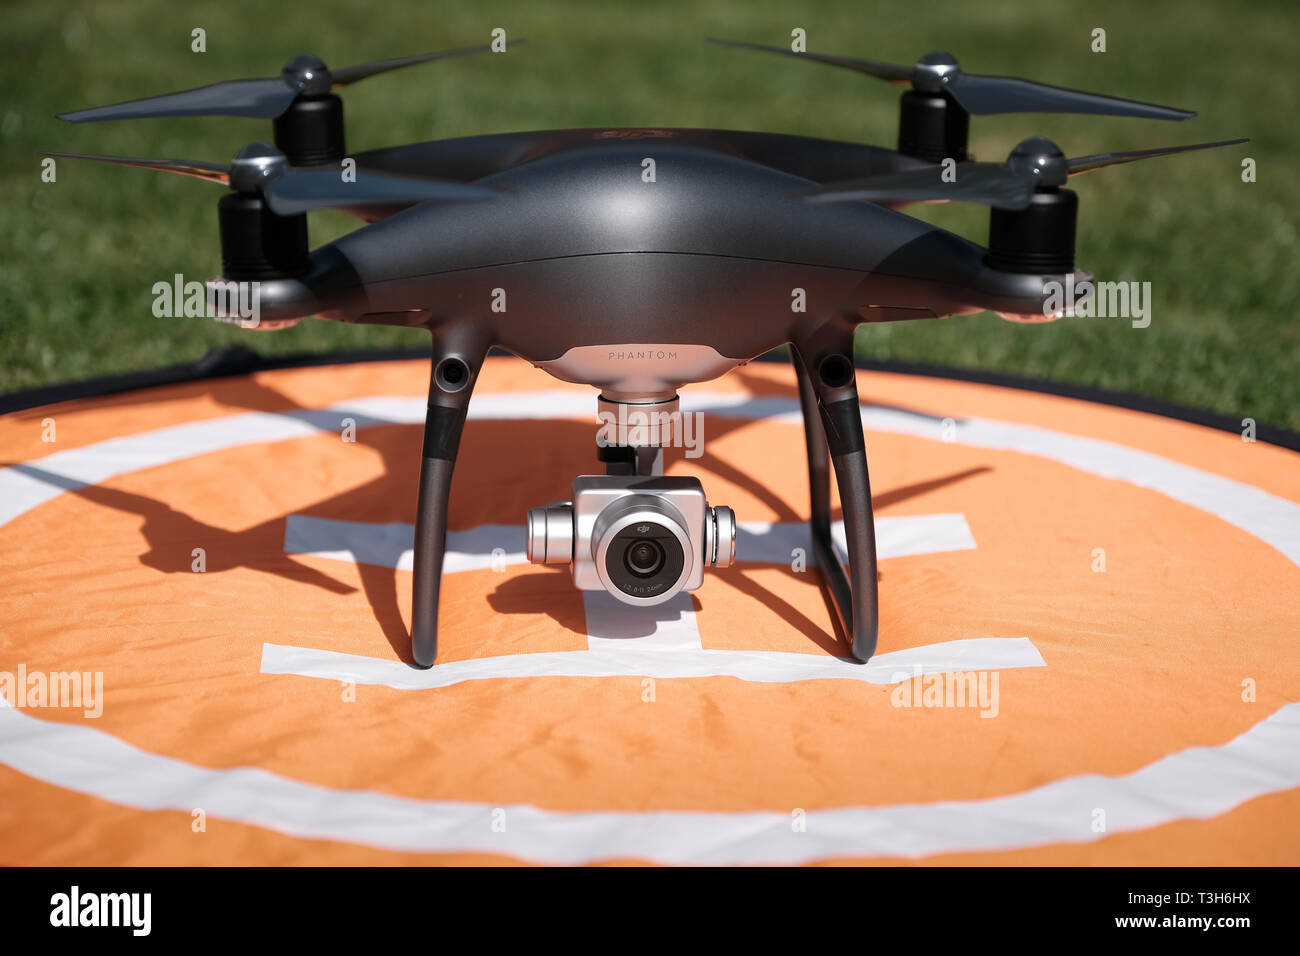 Vue de face d'un fantôme noir obsidienne Pro 4 DJI quadcopter drone sur une  plate-forme d'atterrissage orange entouré d'herbe sur une journée  ensoleillée Photo Stock - Alamy